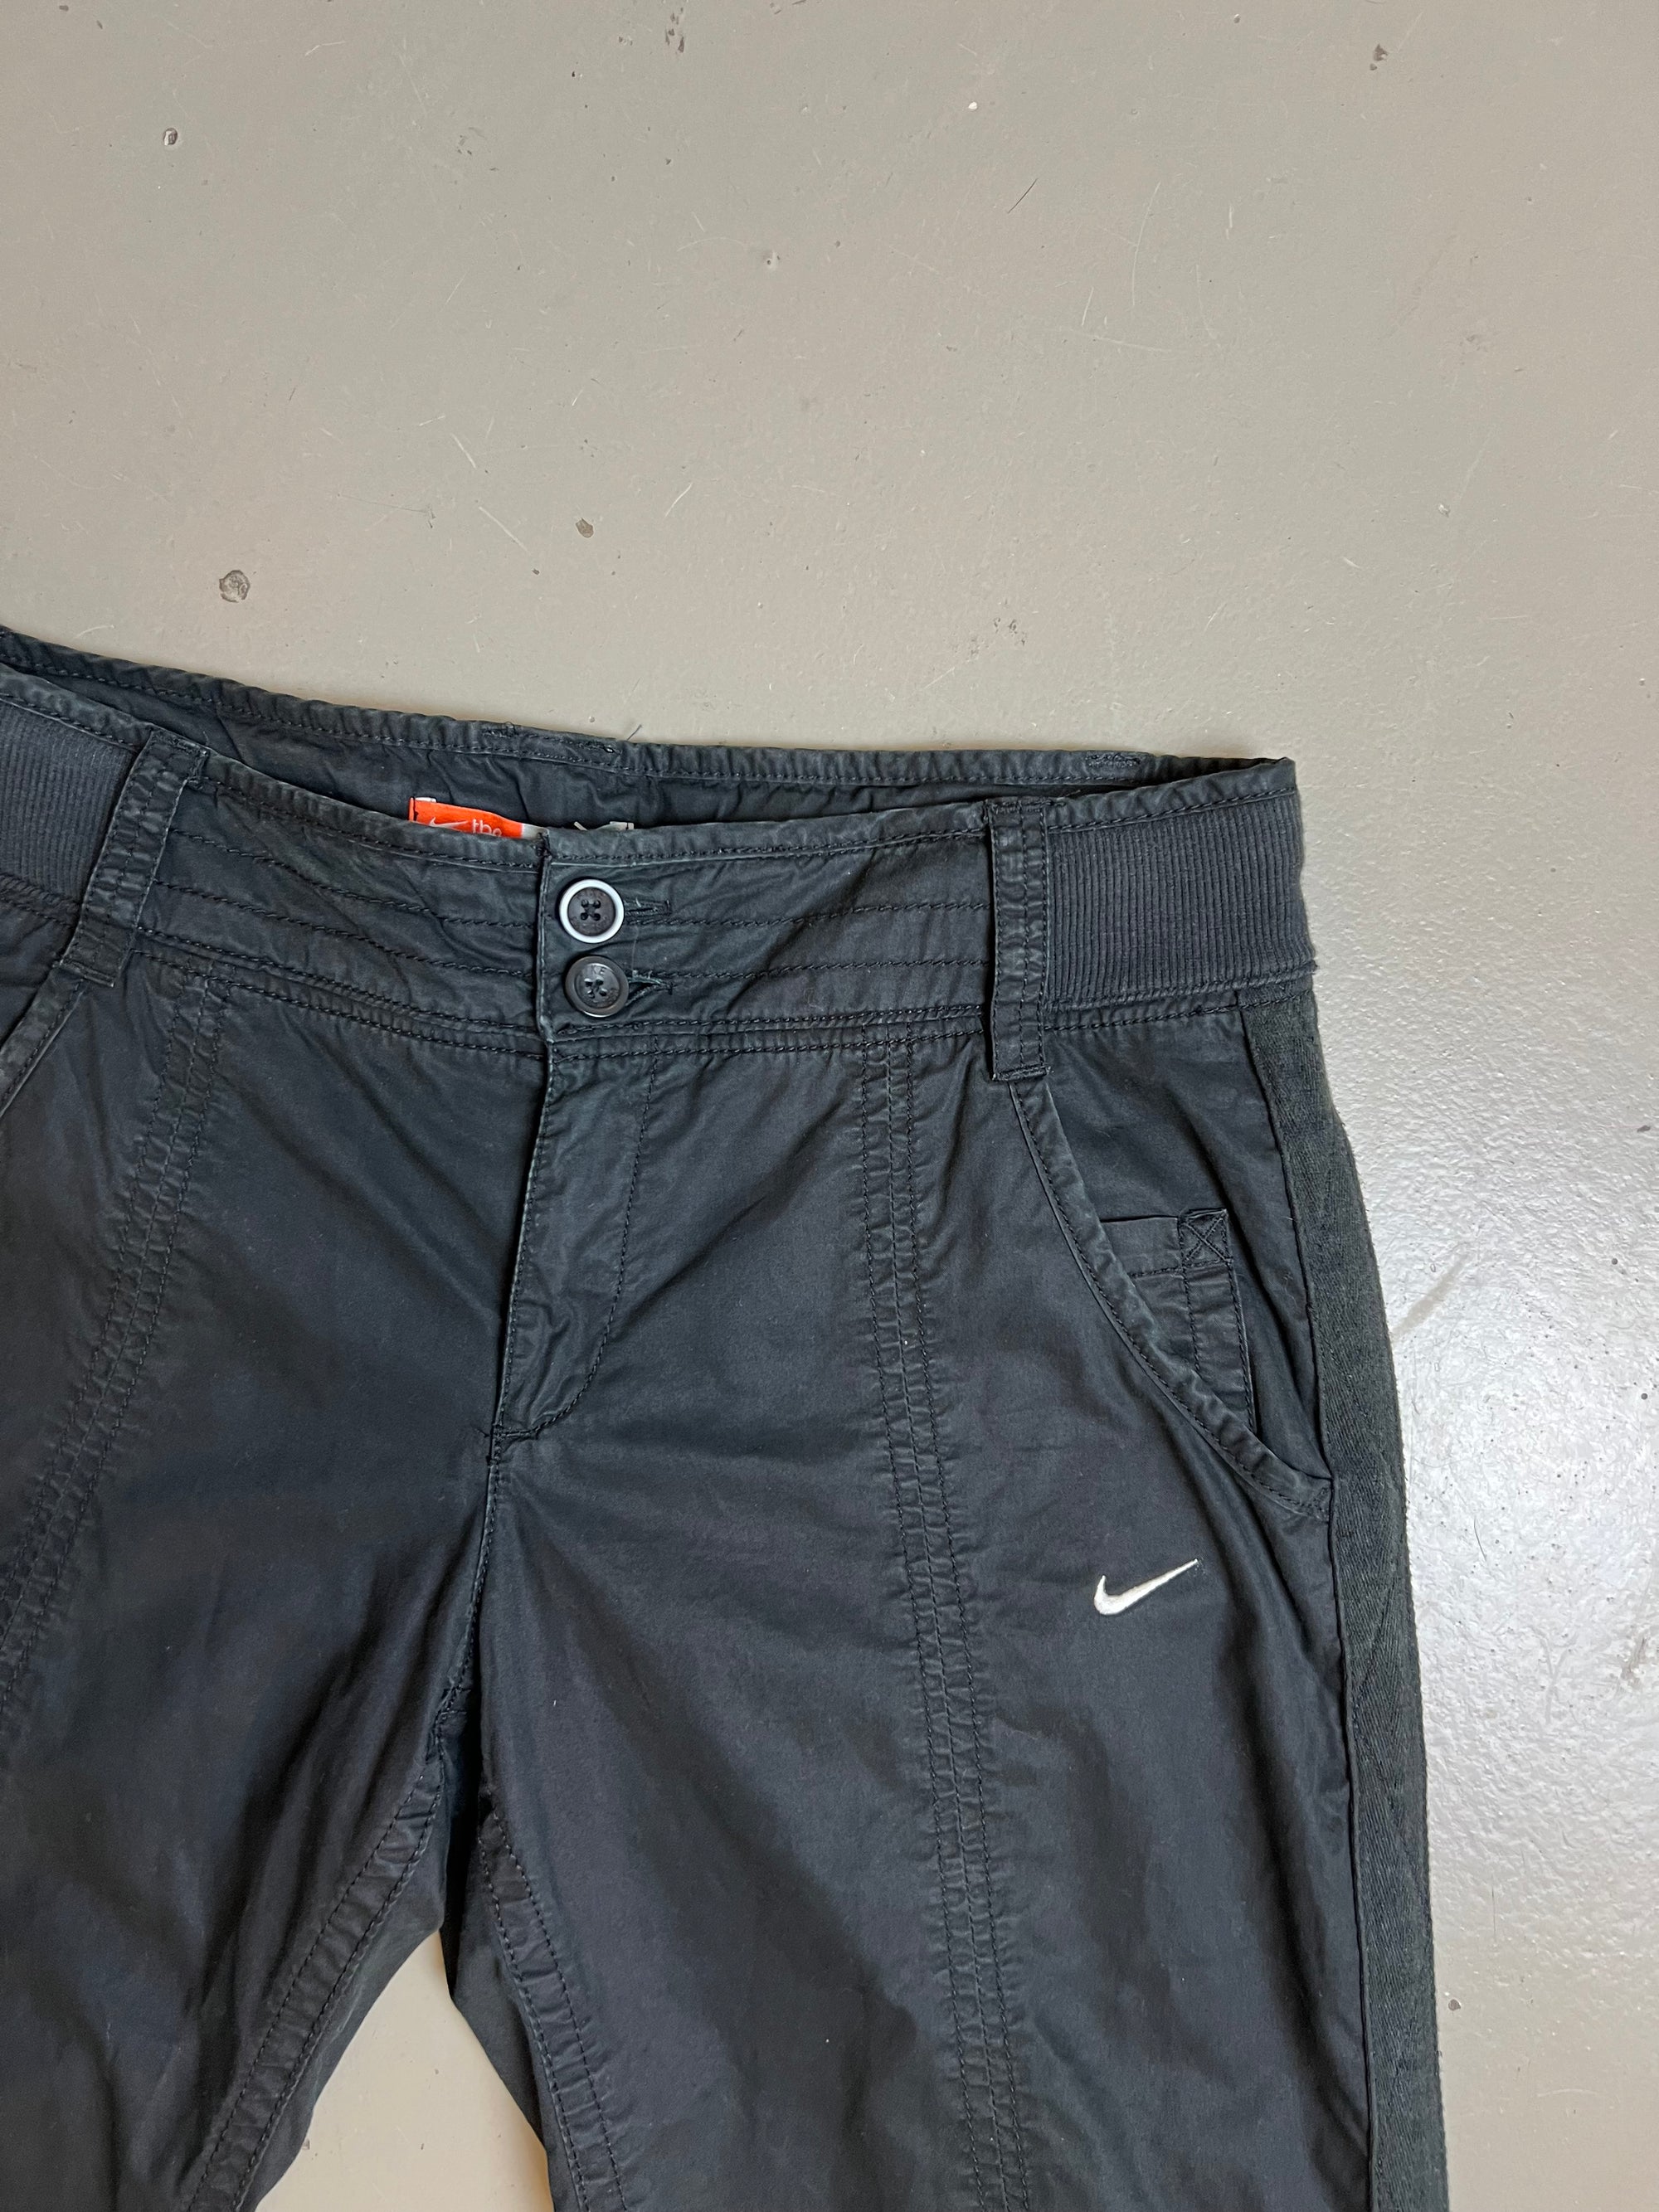 Vintage Nike Capri Shorts M/L